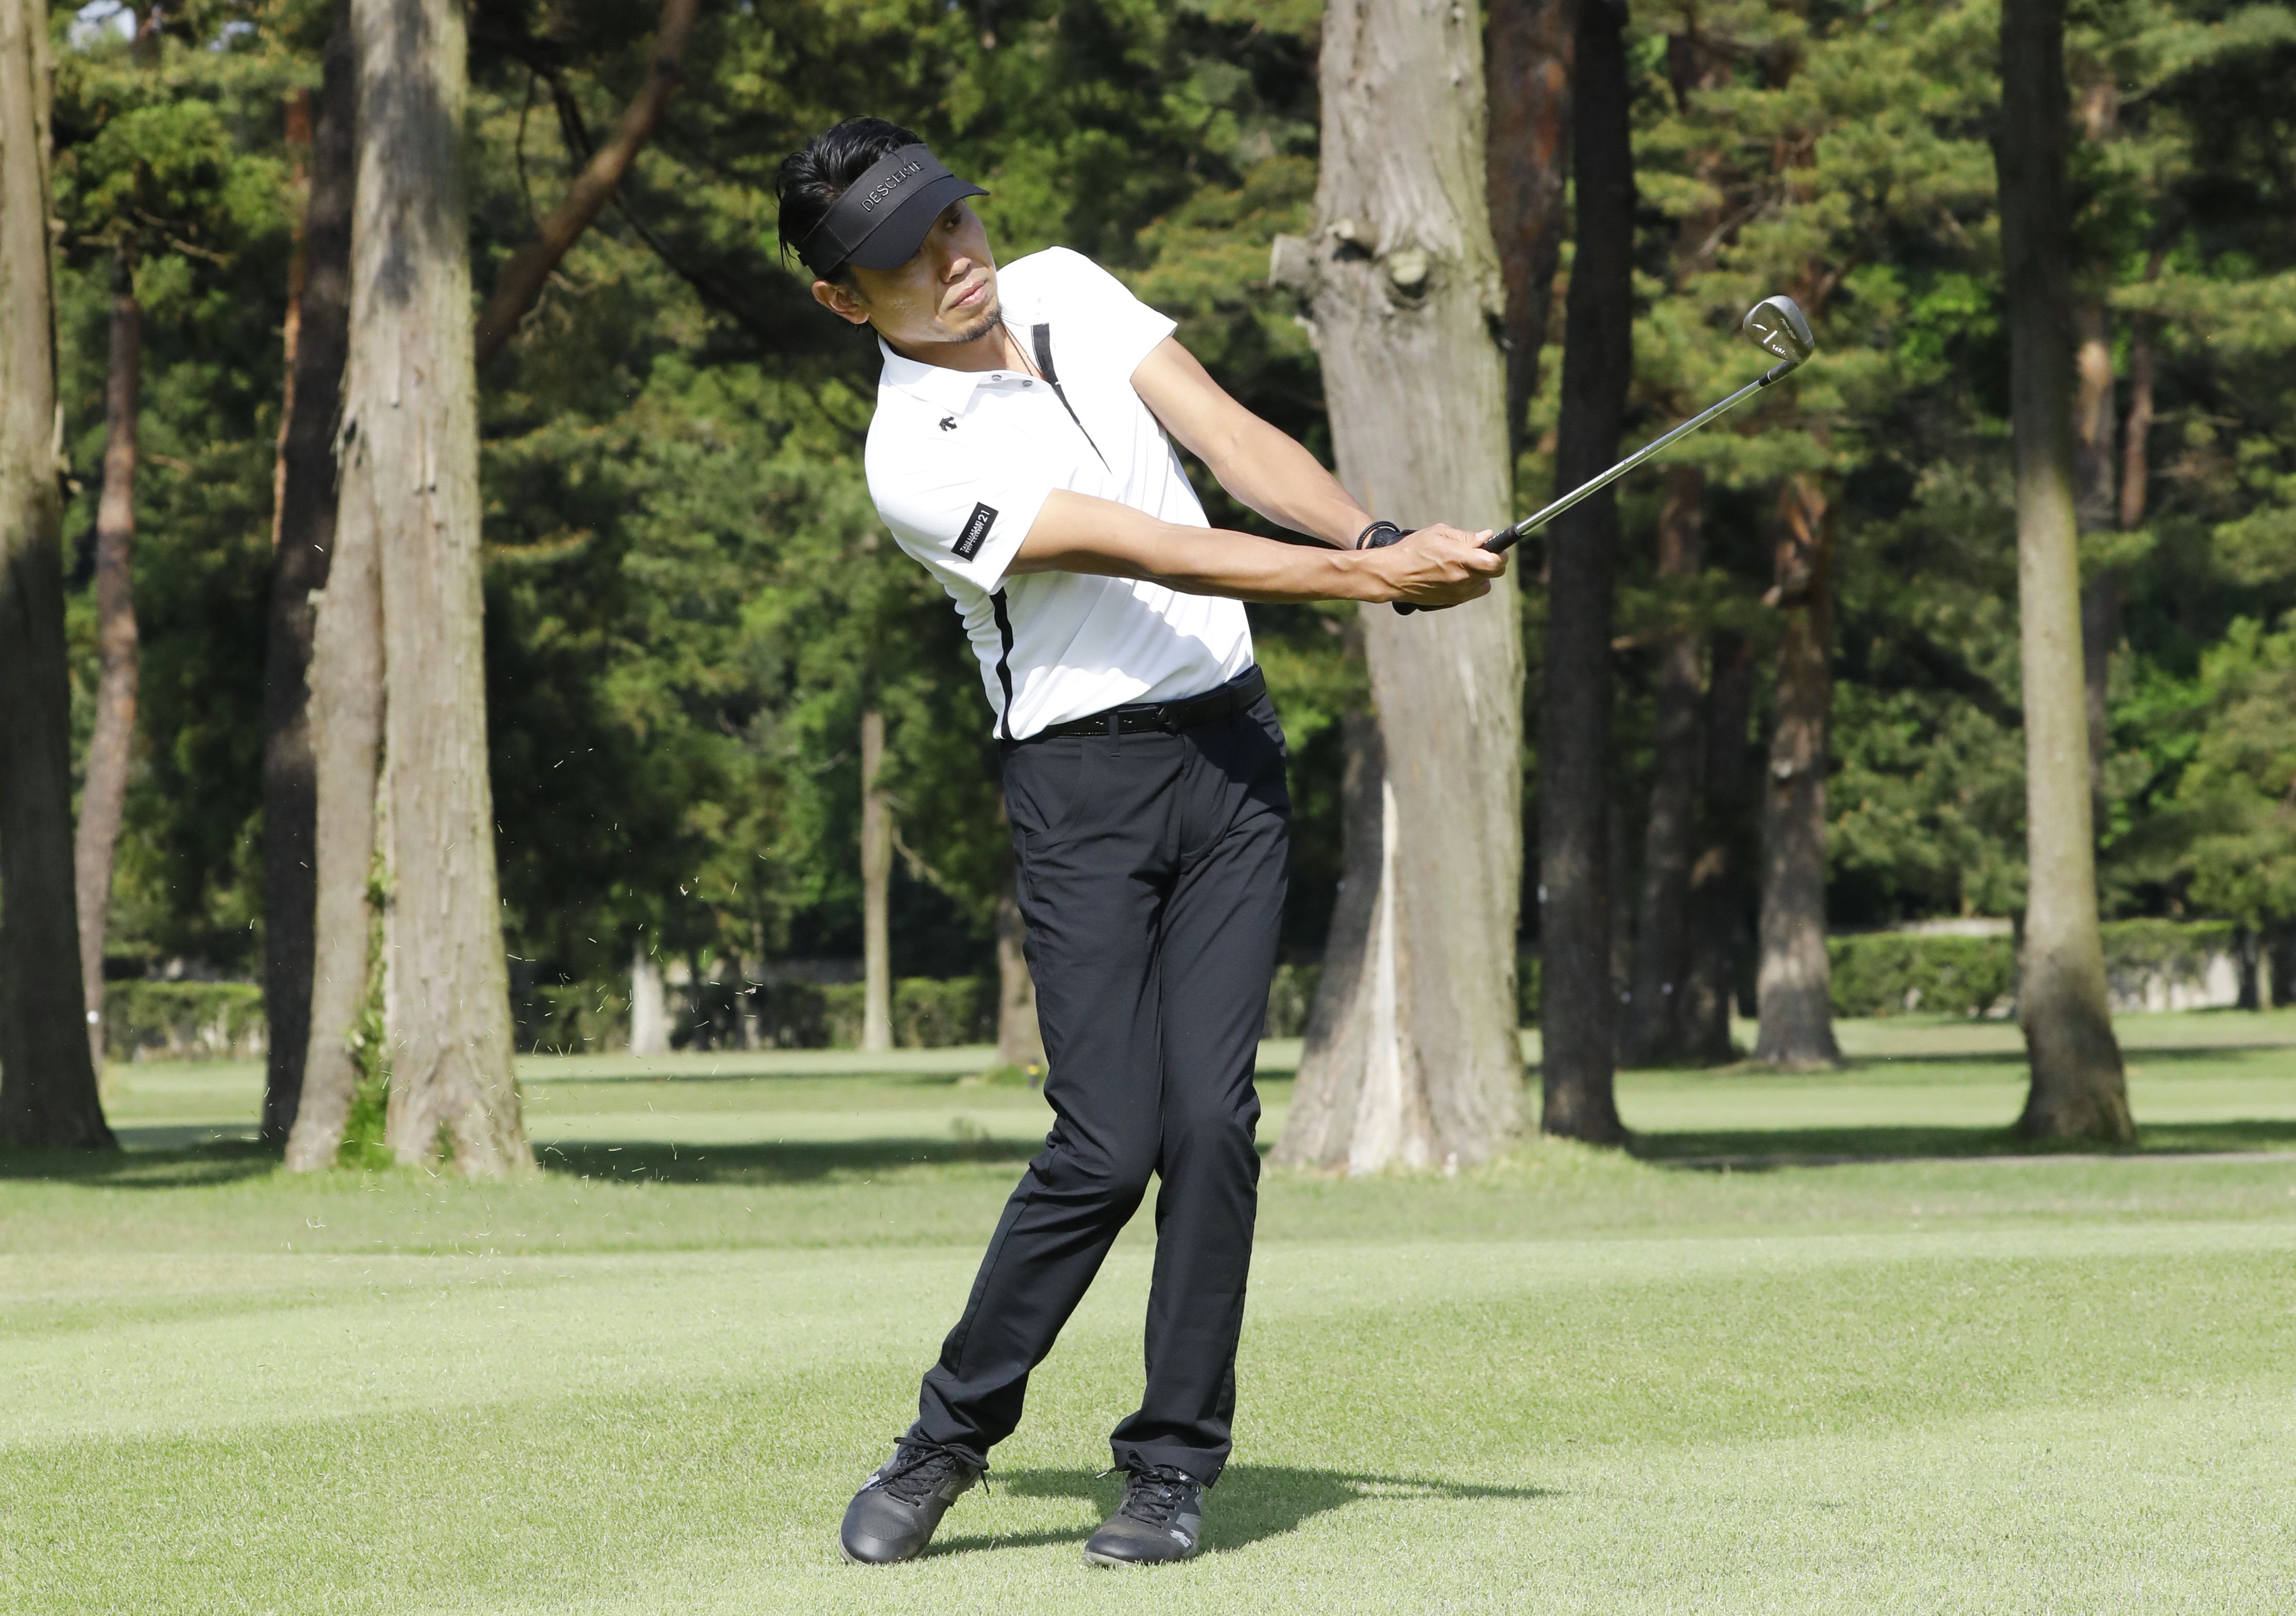 ゴルフ、基本、ハーフスイング、練習法、打ち方、谷将貴、TANIMASAKI、ゴルフレッスン、ゴルフスクール